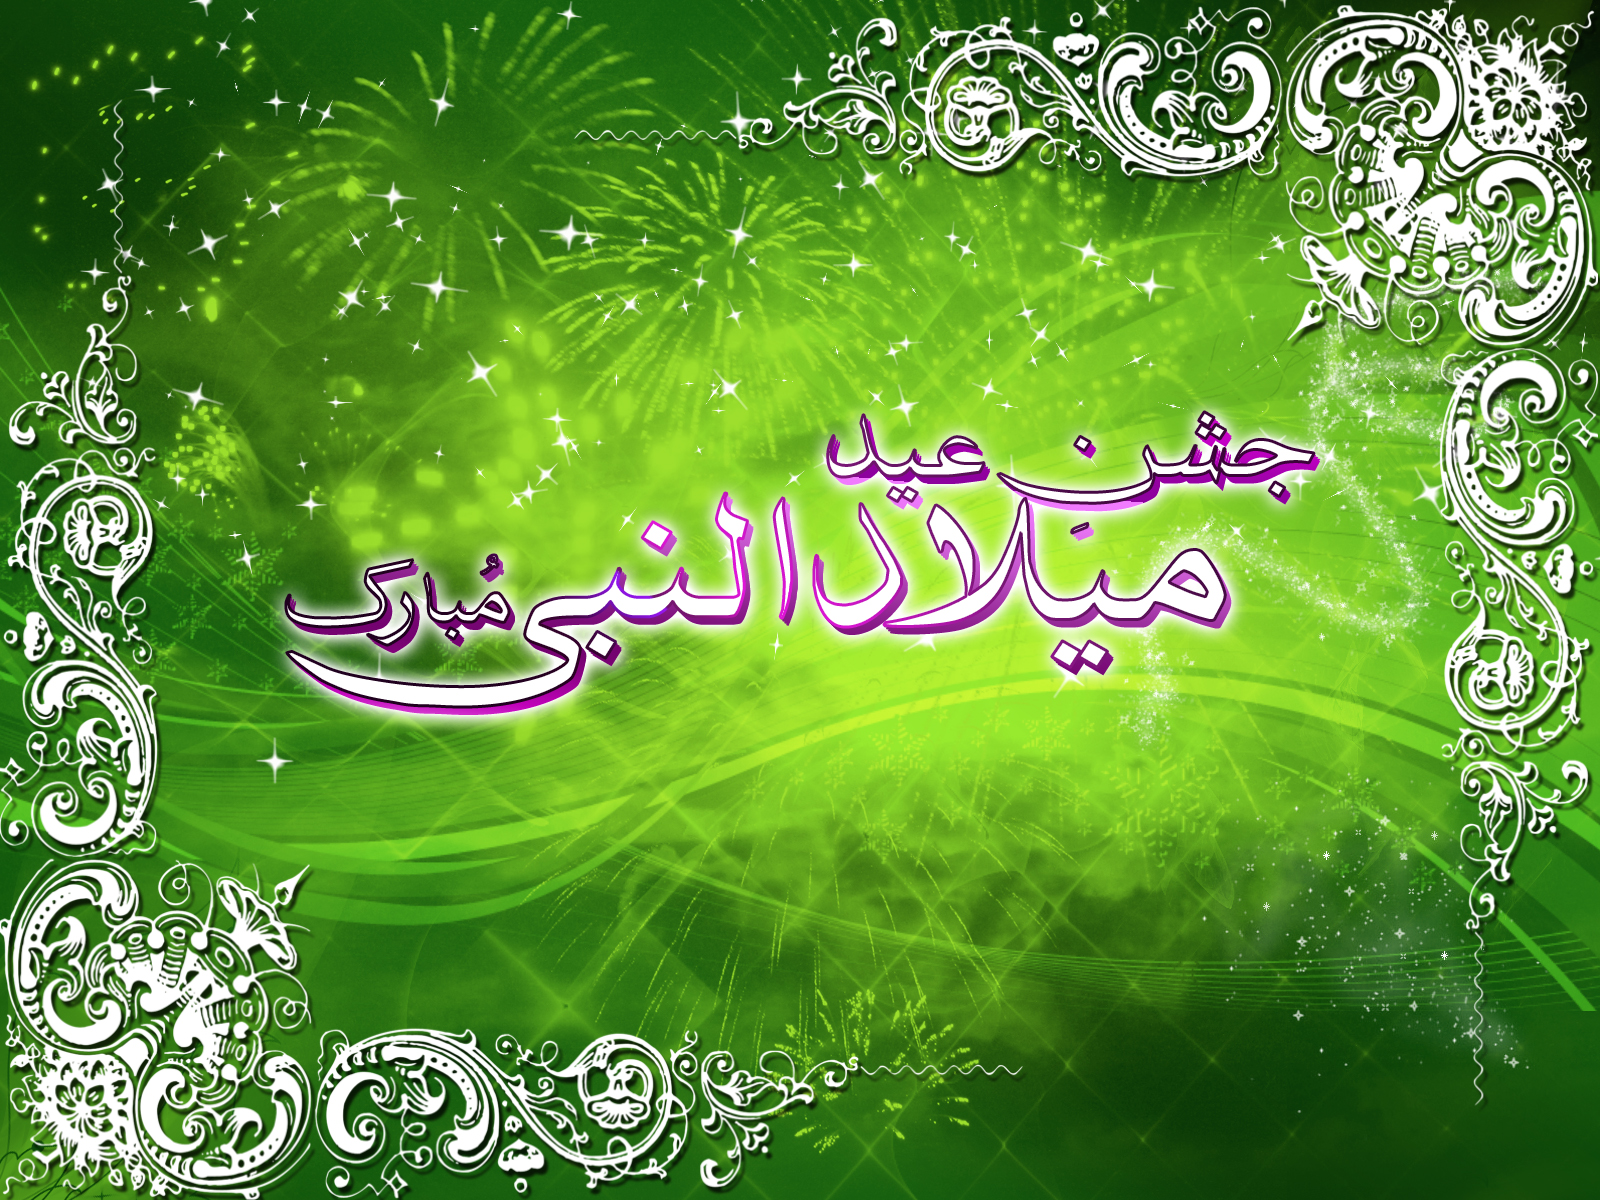  12 Rabi-ul-awal sms in urdu for muslim